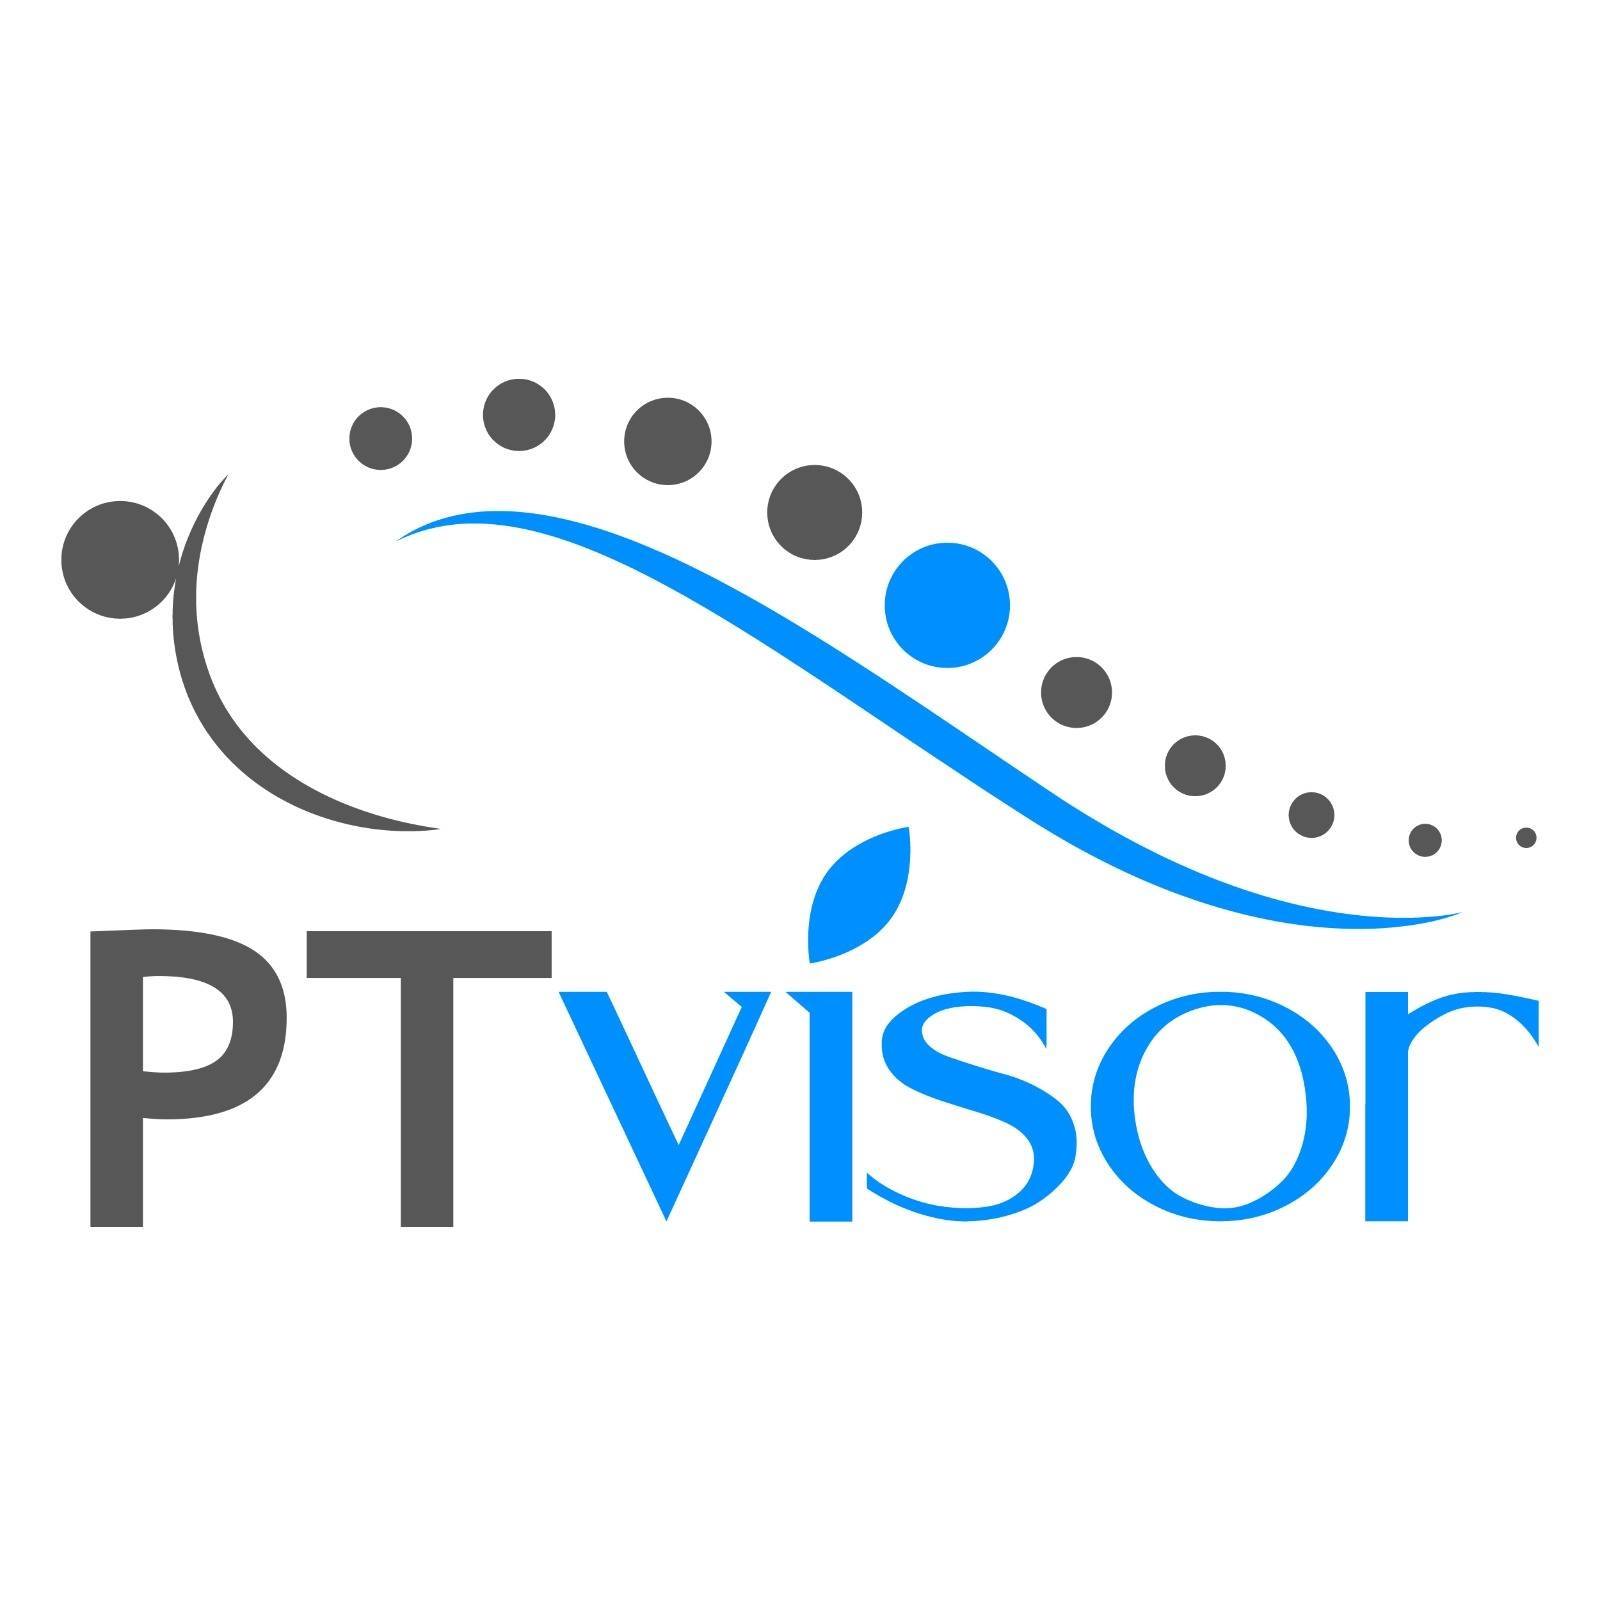 PTvisor logo